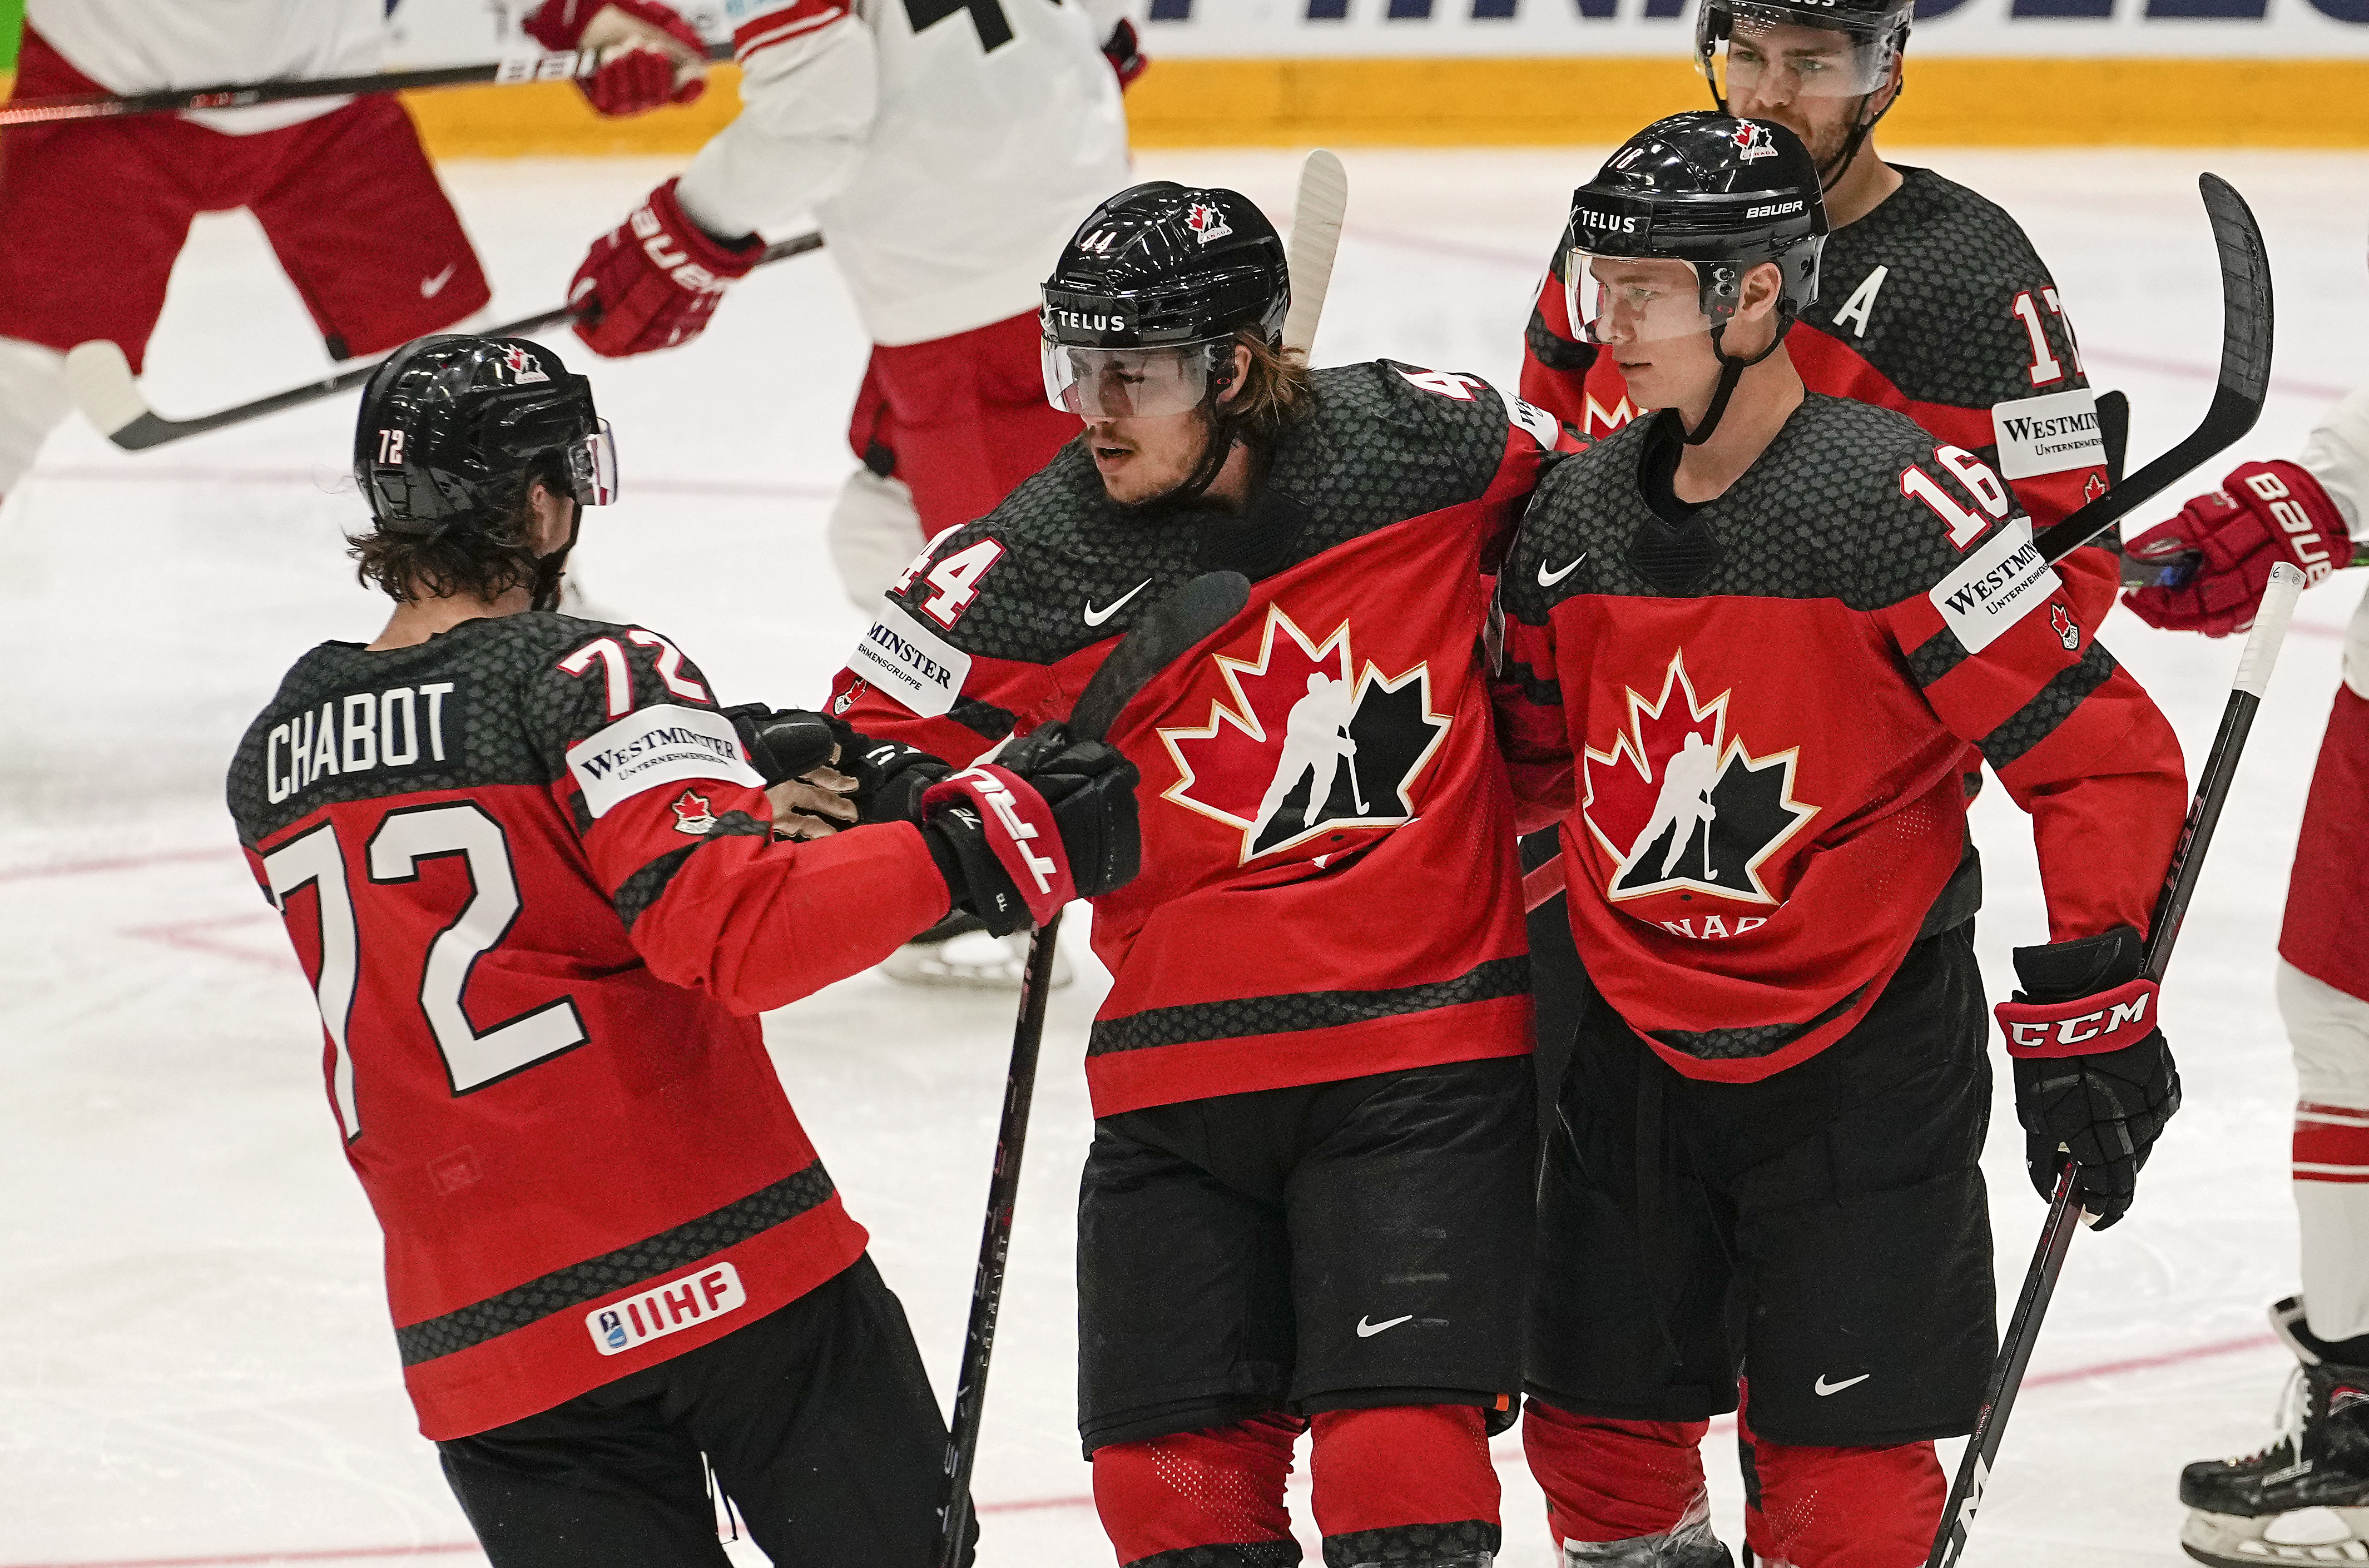 Team Canada advances to the IIHF quarter finals - Team Canada